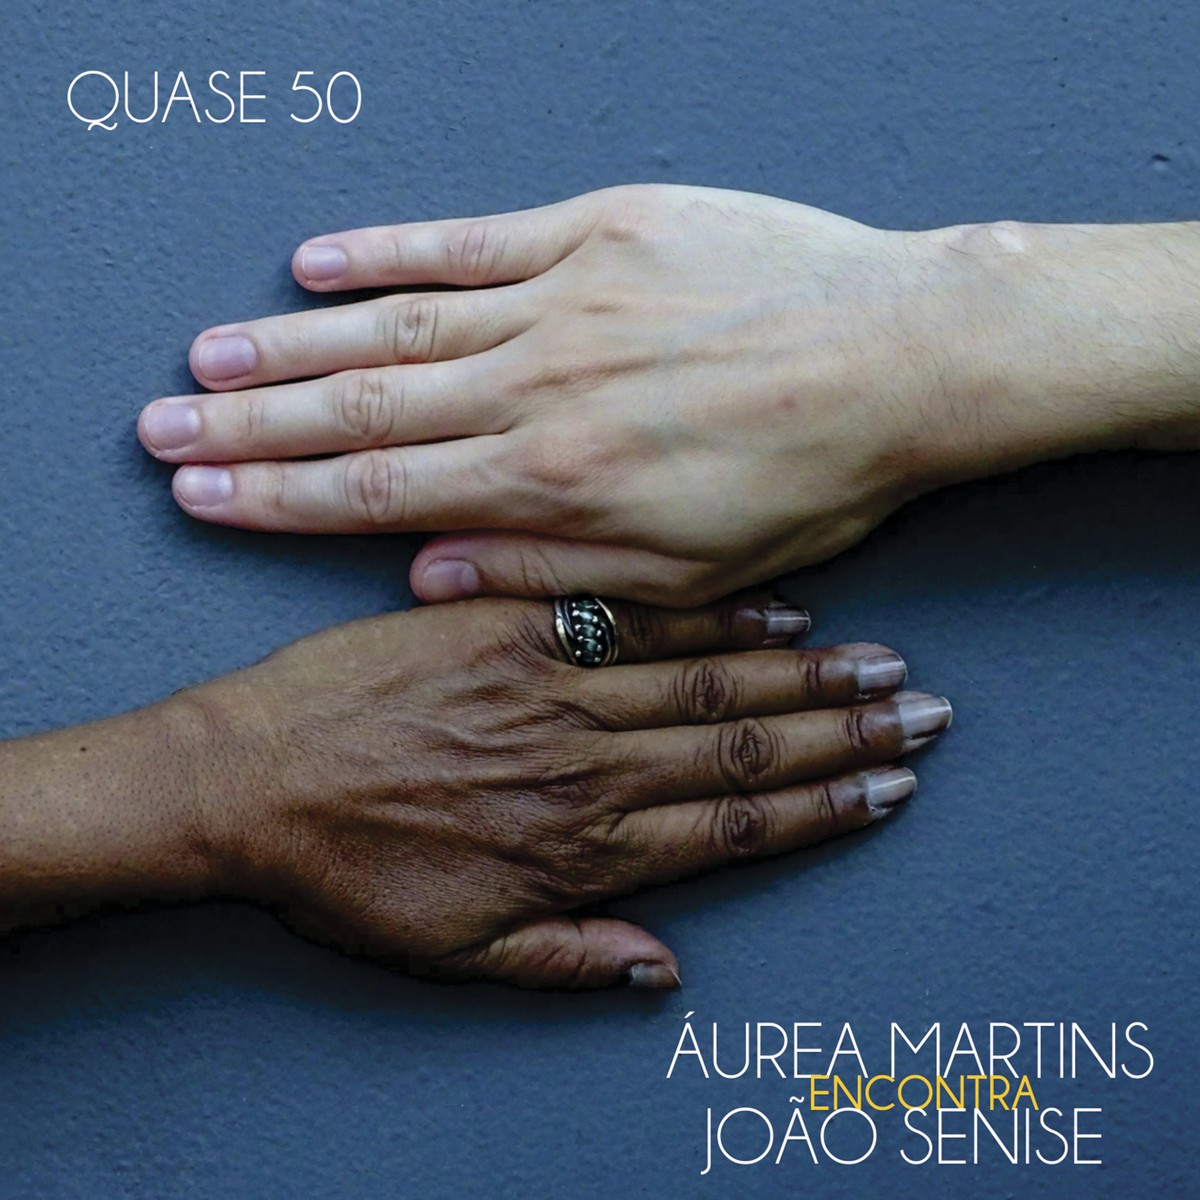 Joyce Moreno celebra a arte do encontro de Áurea Martins e João Senise no álbum ‘Quase 50’ | Blog do Mauro Ferreira